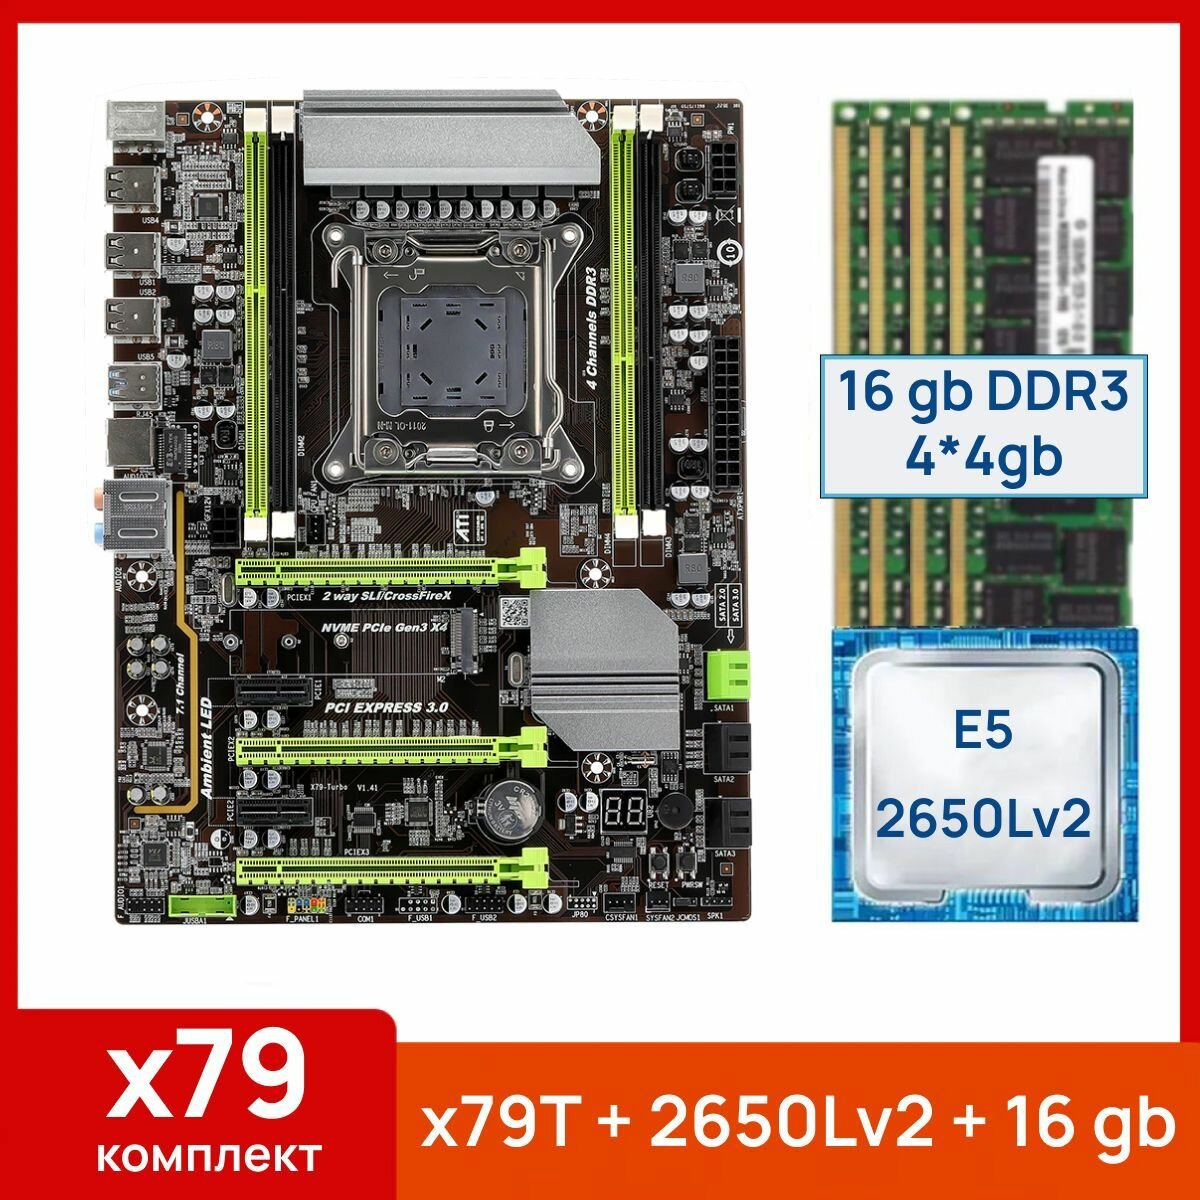 Комплект: Atermiter x79-Turbo + Xeon E5 2650Lv2 + 16 gb(4x4gb) DDR3 ecc reg